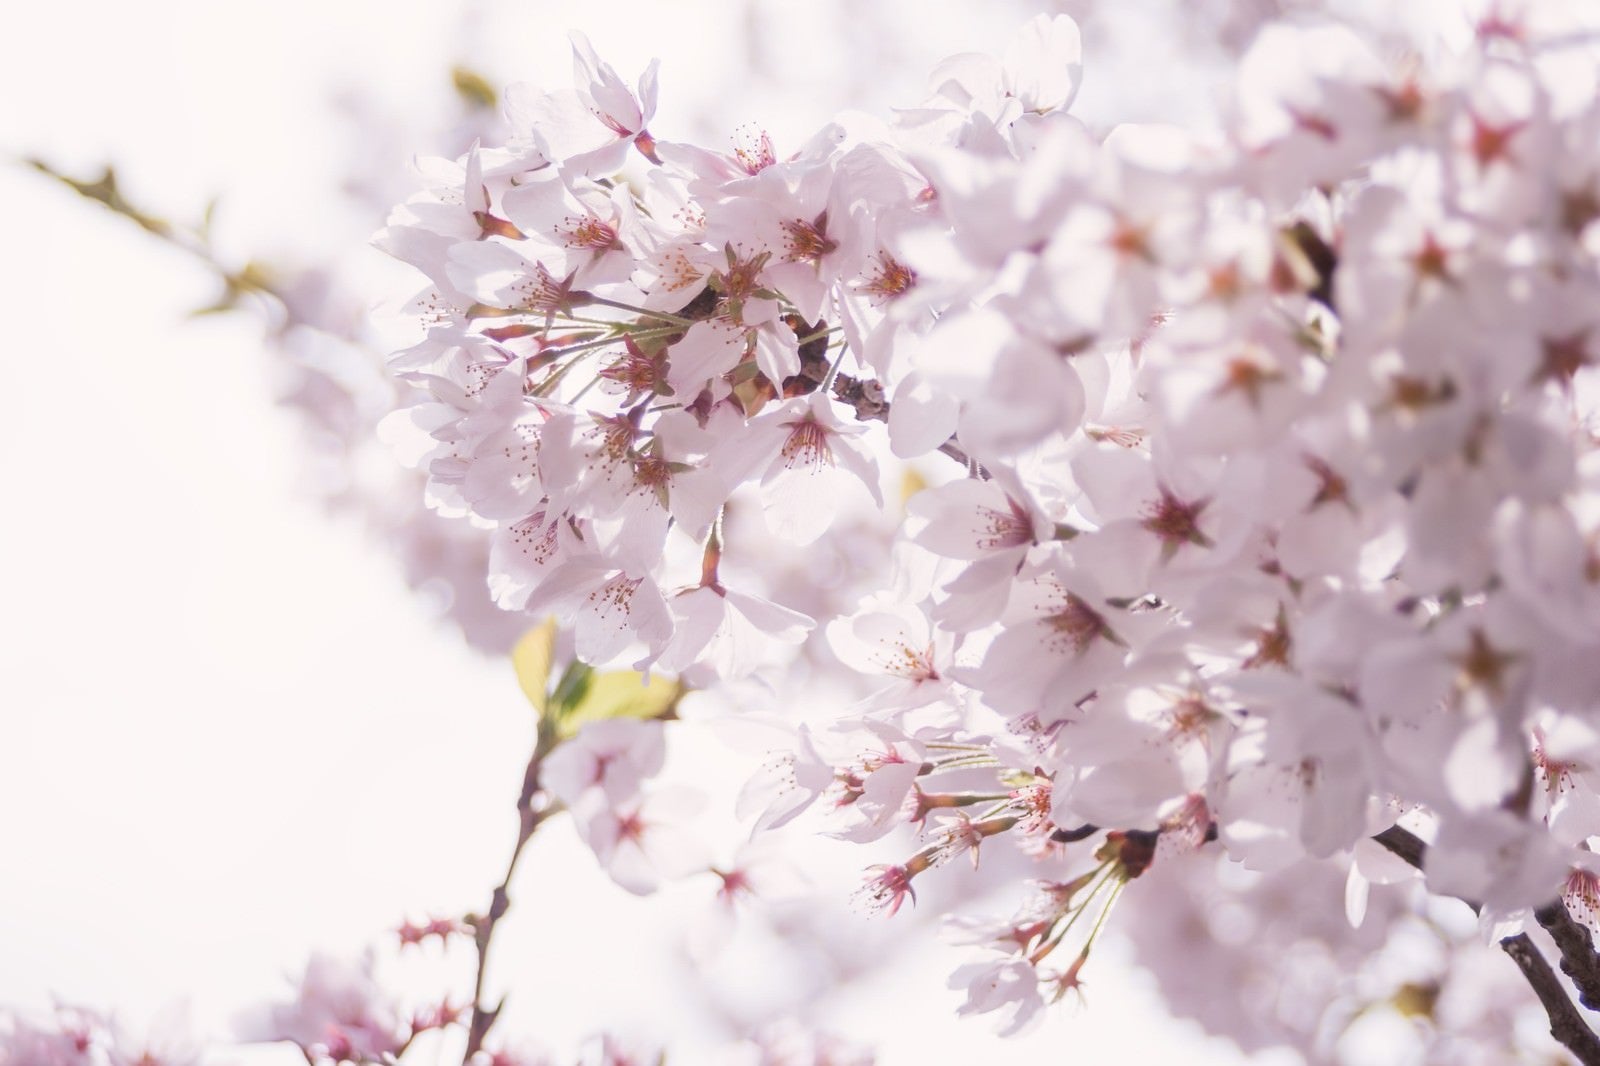 「春の訪れ、桜の開花」の写真